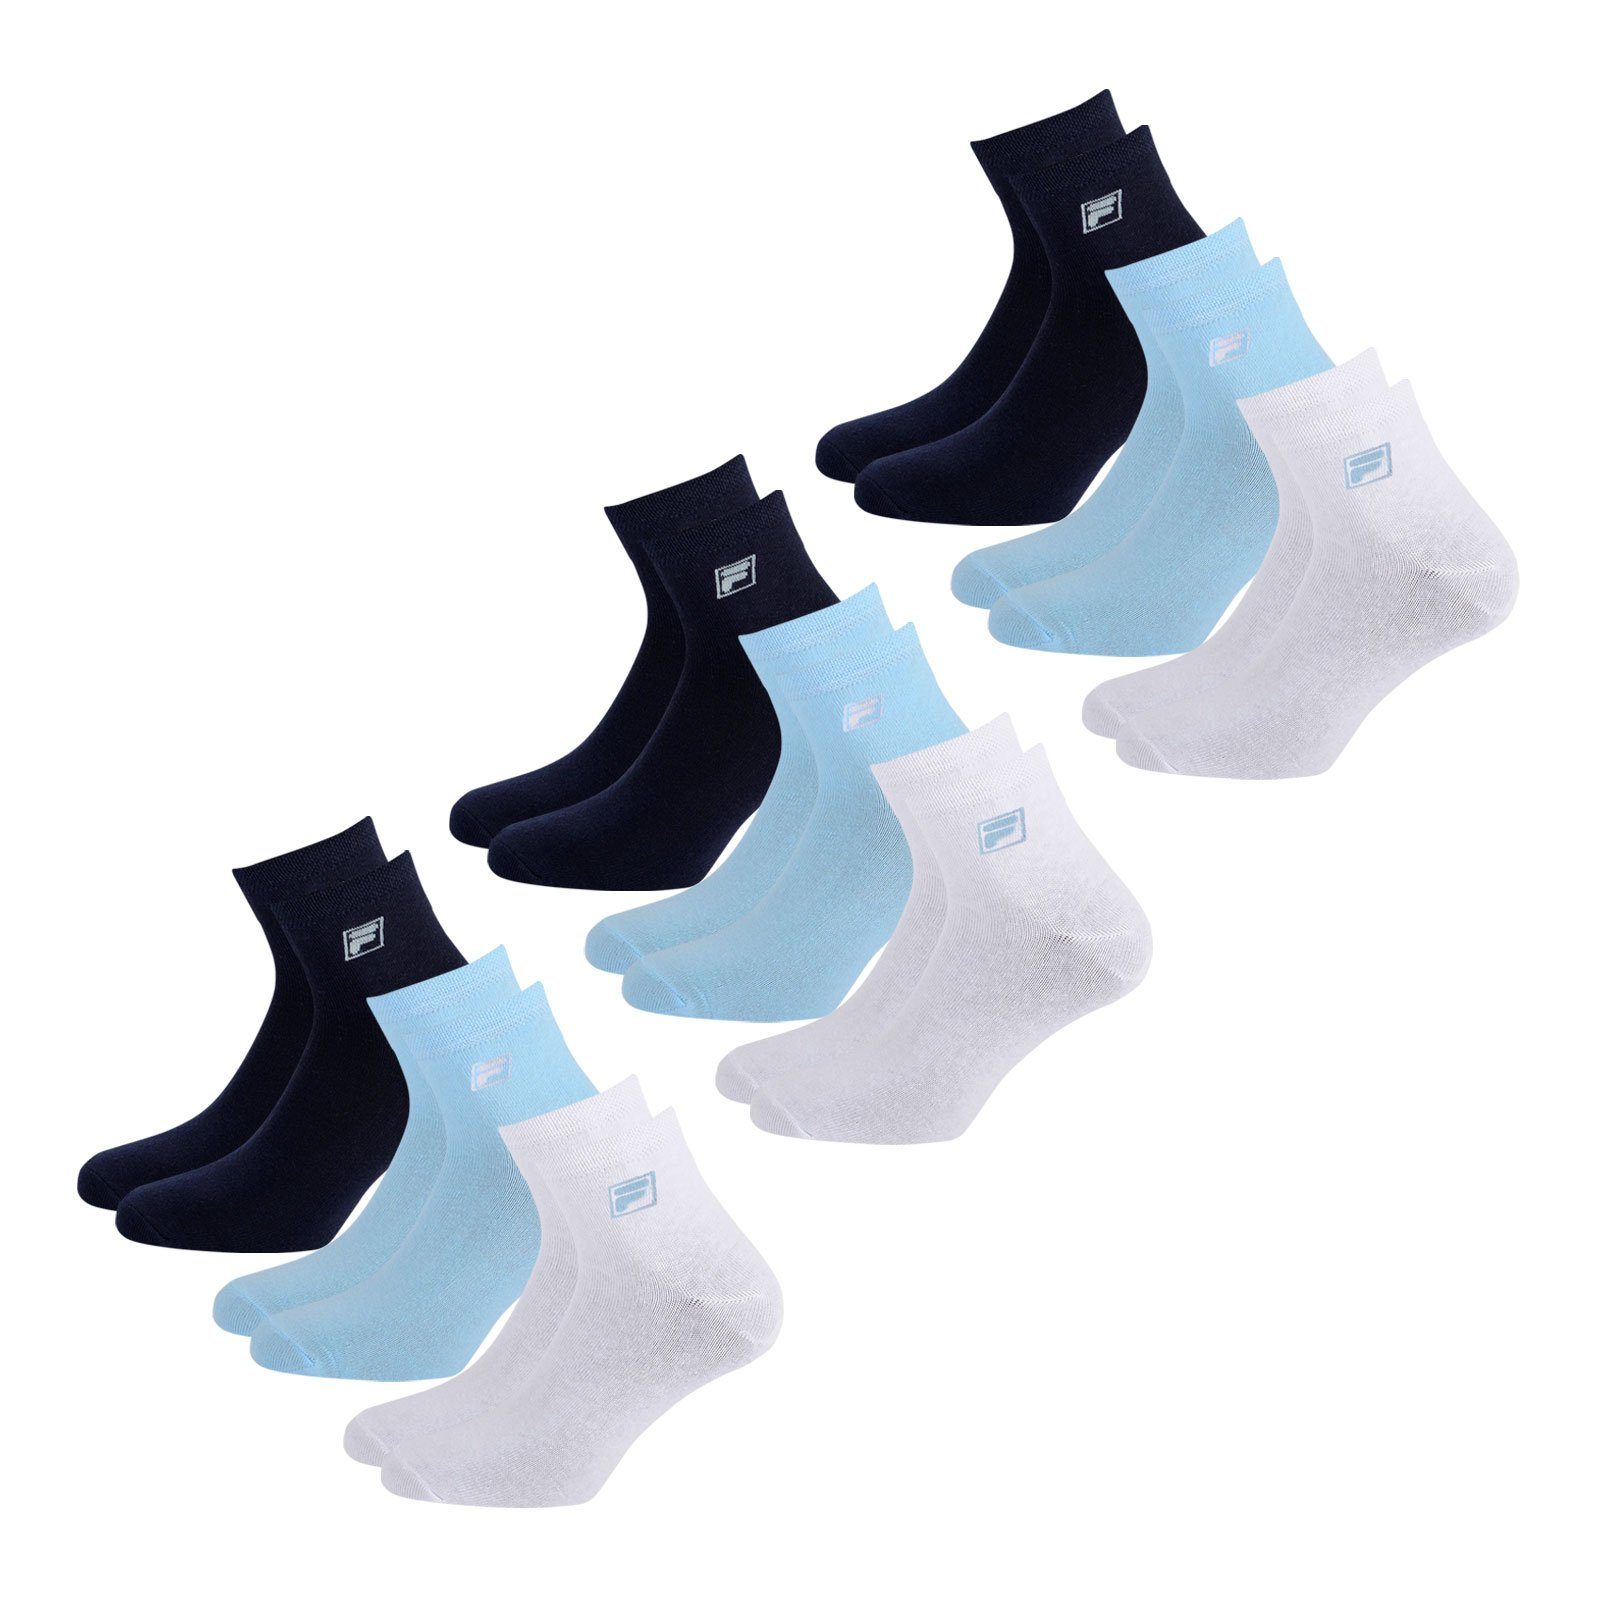 Fila Sportsocken Quarter Socken (9-Paar) mit elastischem Piquebund 821 navy / white / light blue